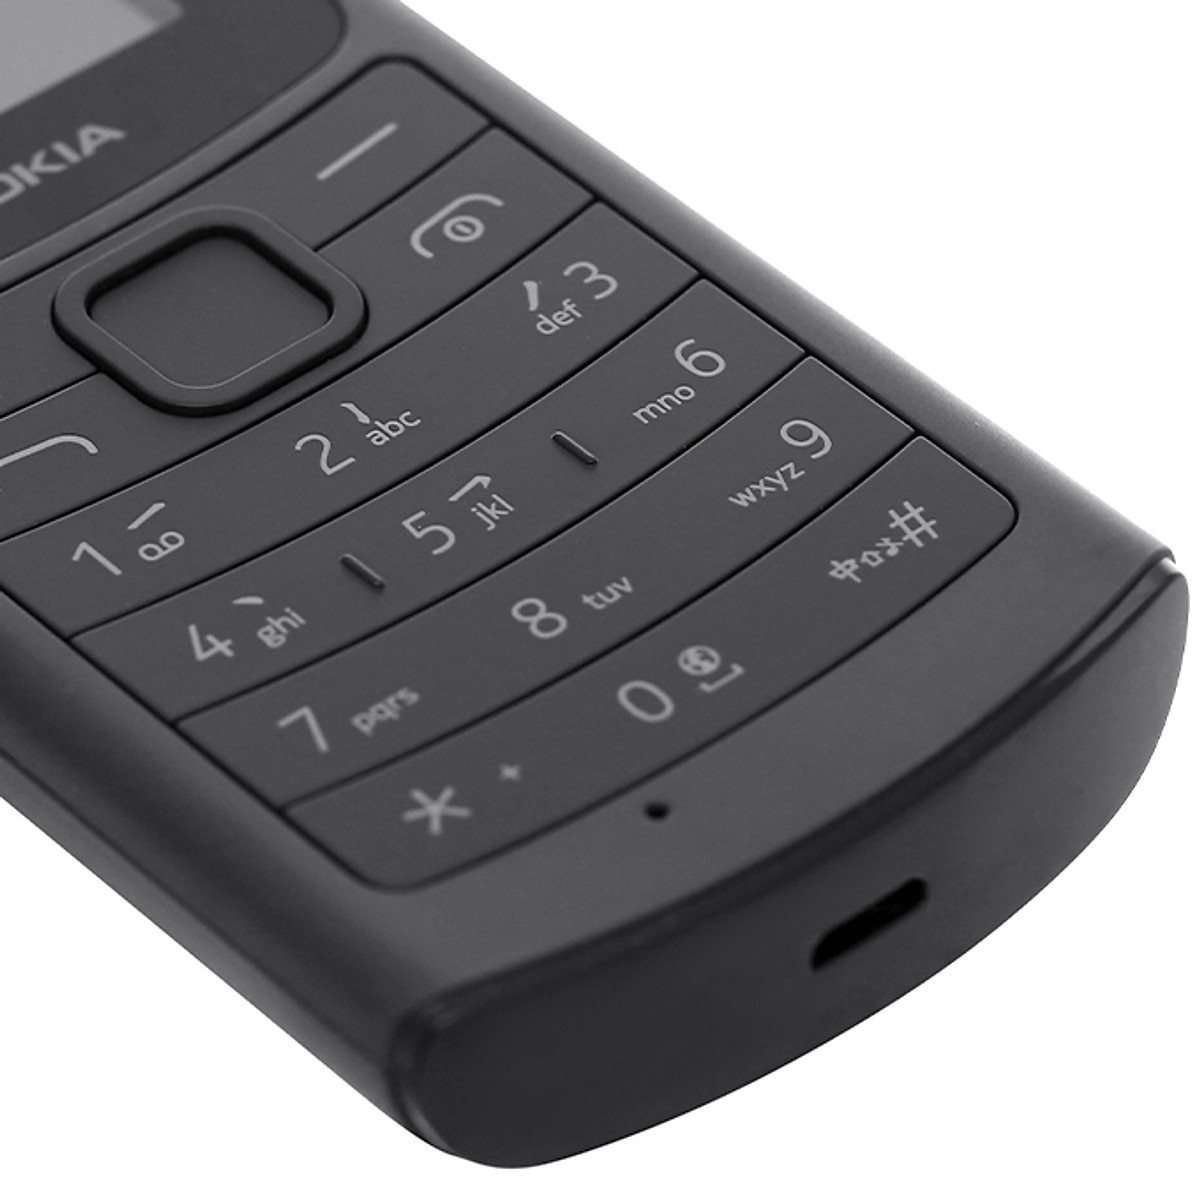 hình nền nokia 8110: Tìm kiếm hình nền Nokia 8110 để trang trí cho điện thoại của bạn? Khám phá ngay bộ sưu tập hình nền Nokia 8110 đẹp mắt, sáng tạo và độc đáo!